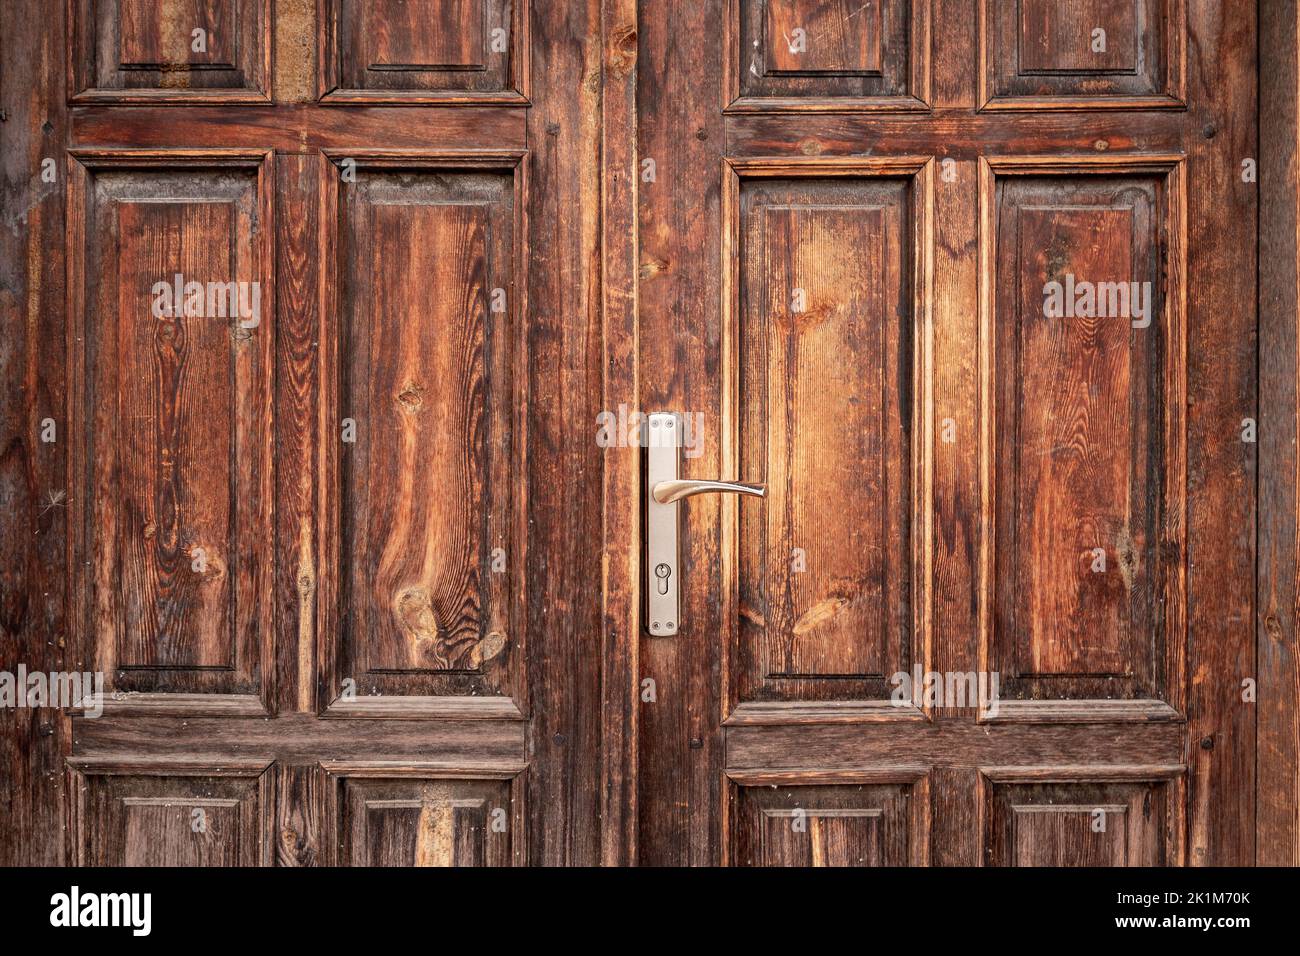 Antigua, rústica, clásica, marrón, puerta de madera con tirador de hierro. Texturas de puerta y fondo. Fotografía de alta calidad Foto de stock